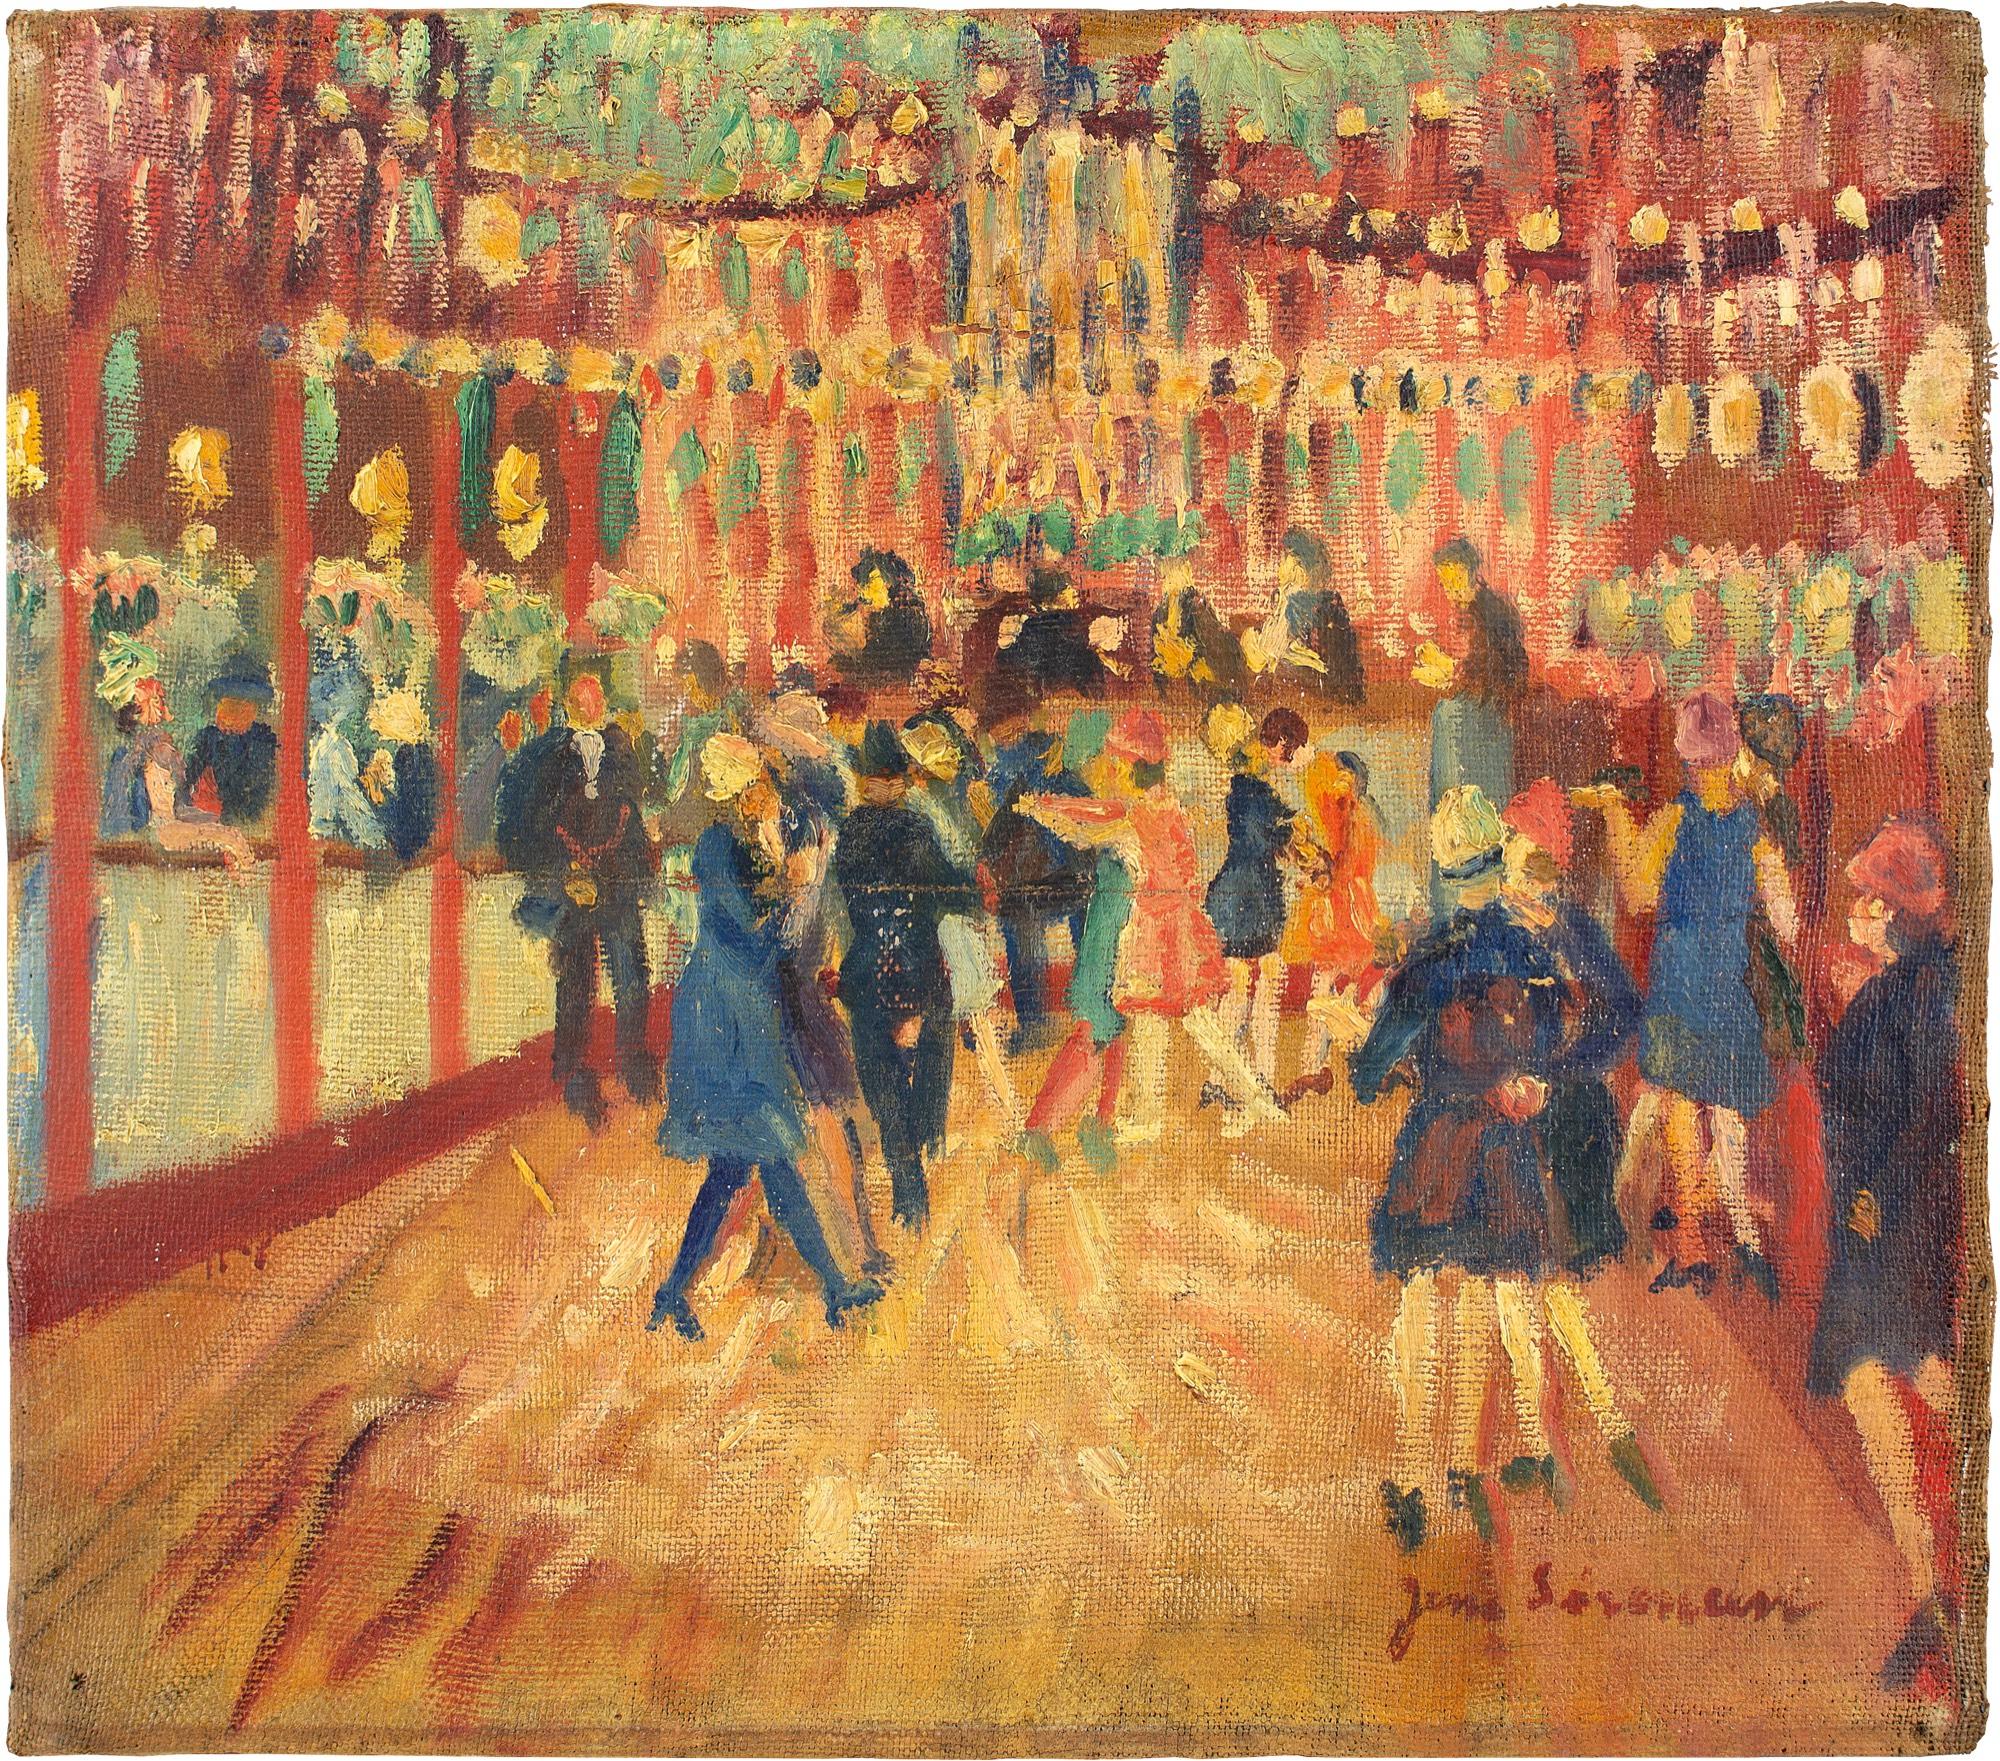 Cette peinture à l'huile du début du XXe siècle de l'artiste danois Jens Sørensen (1887-1953) représente une scène animée à Bakken, le plus ancien parc d'attractions du monde.

Jens Sørensen était surtout connu pour ses scènes expressives, en